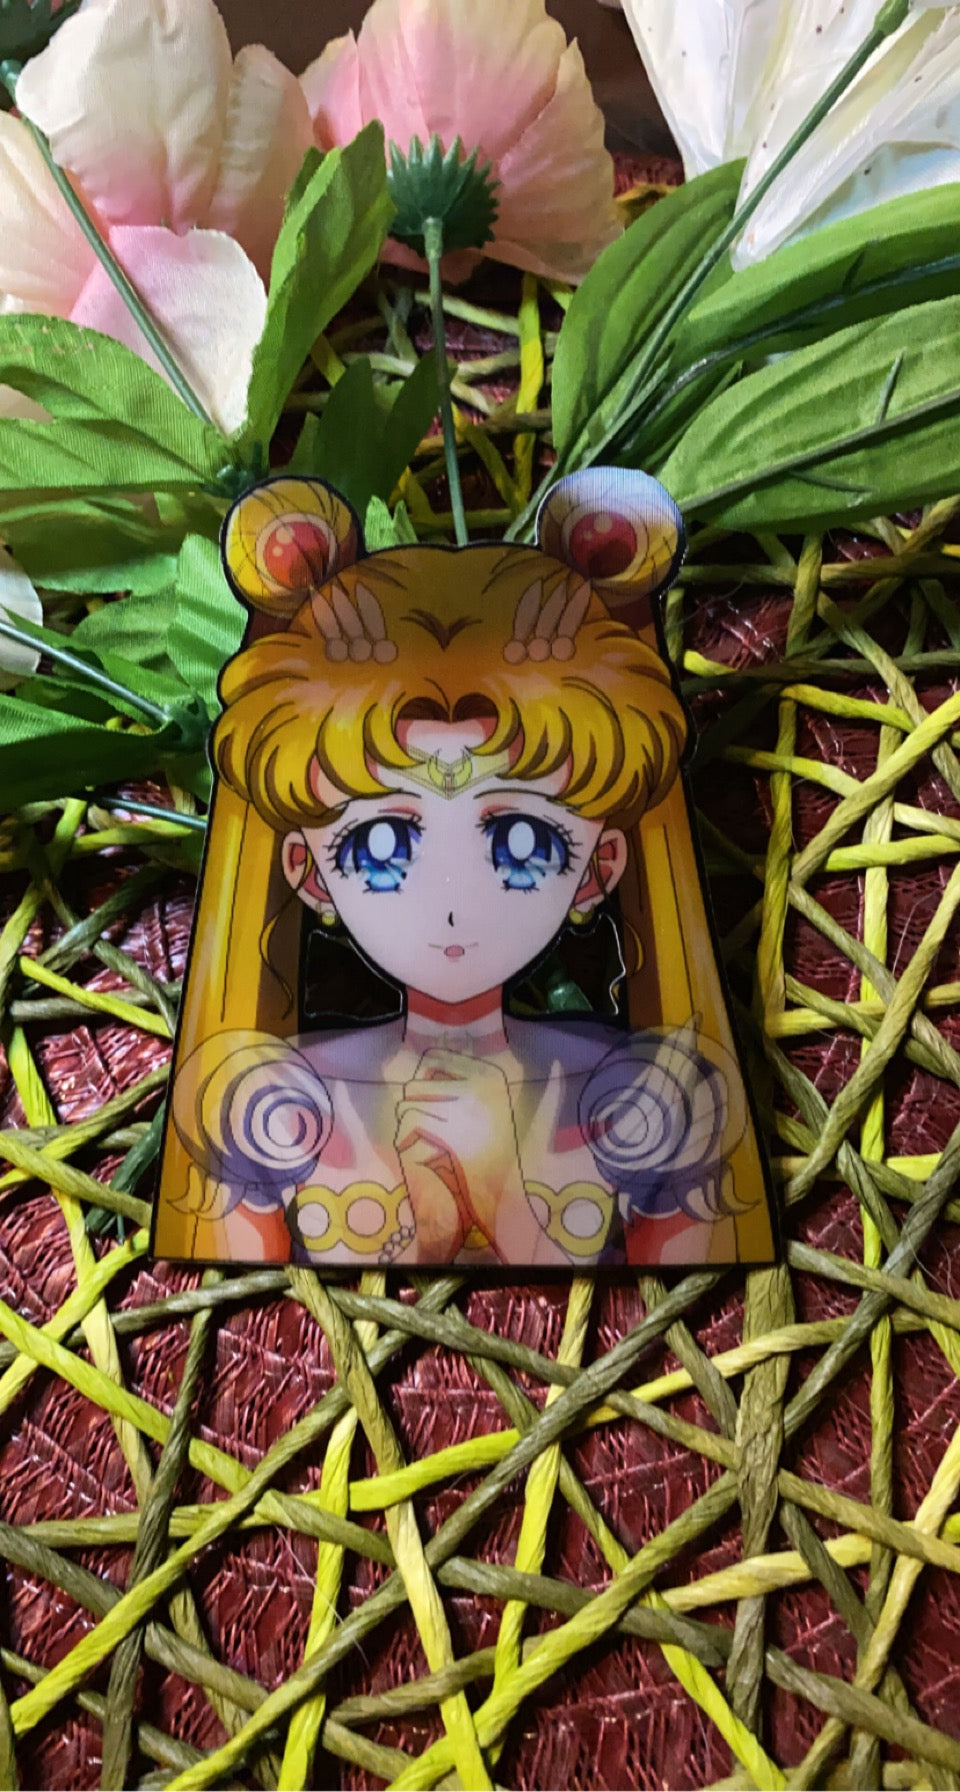 Sailor Moon- Custom Anime Peaker